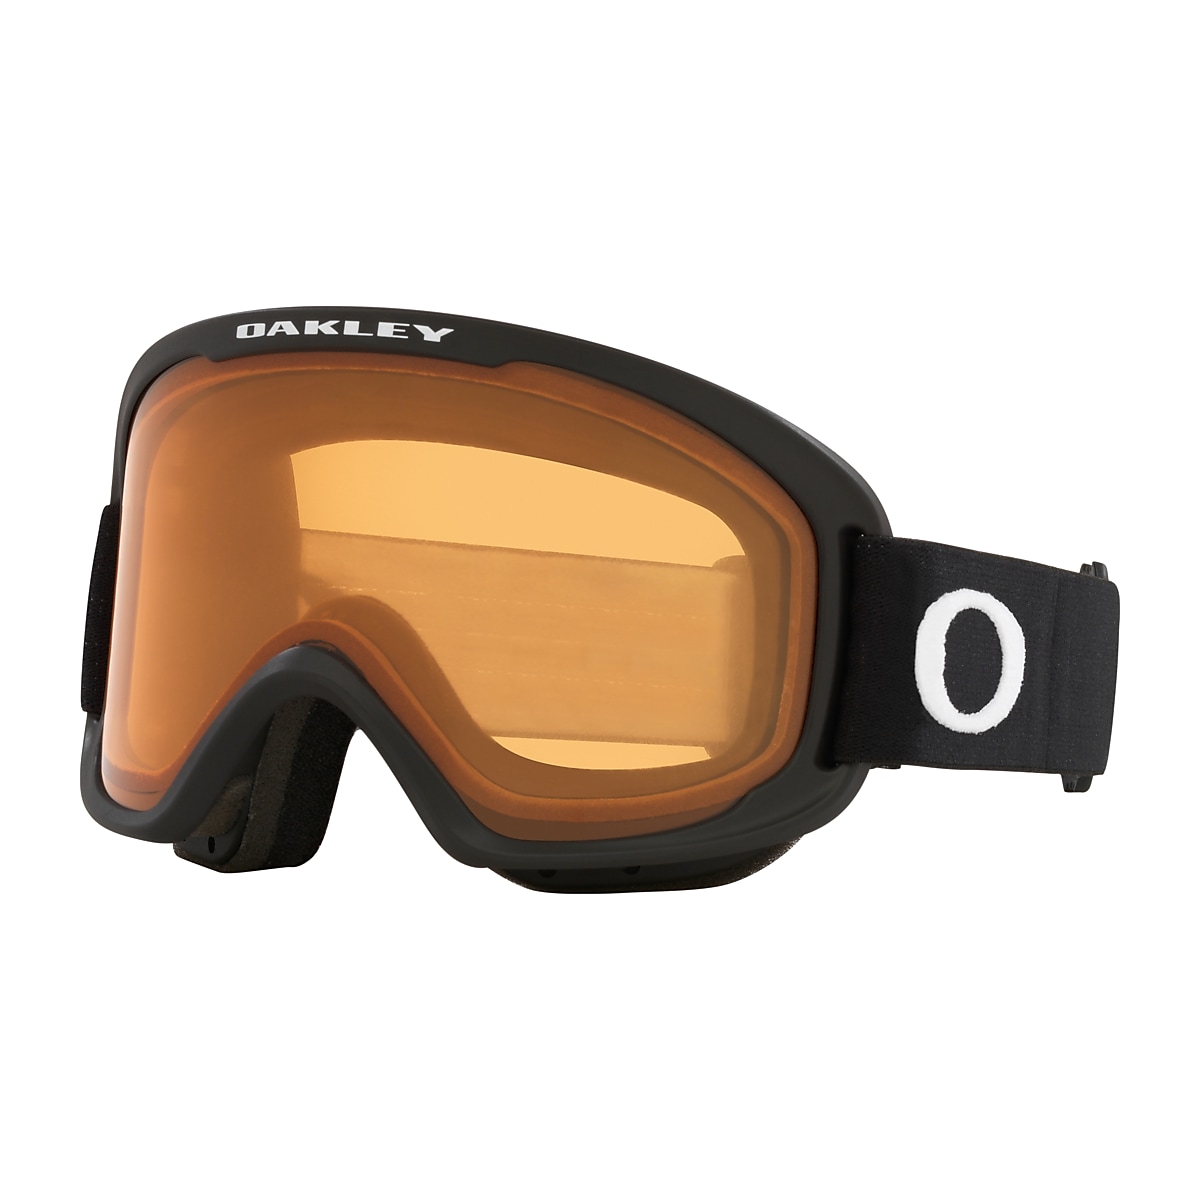 O-Frame® 2.0 PRO M Goggles - Matte Black - Persimmon - OO7125-01 | Oakley®